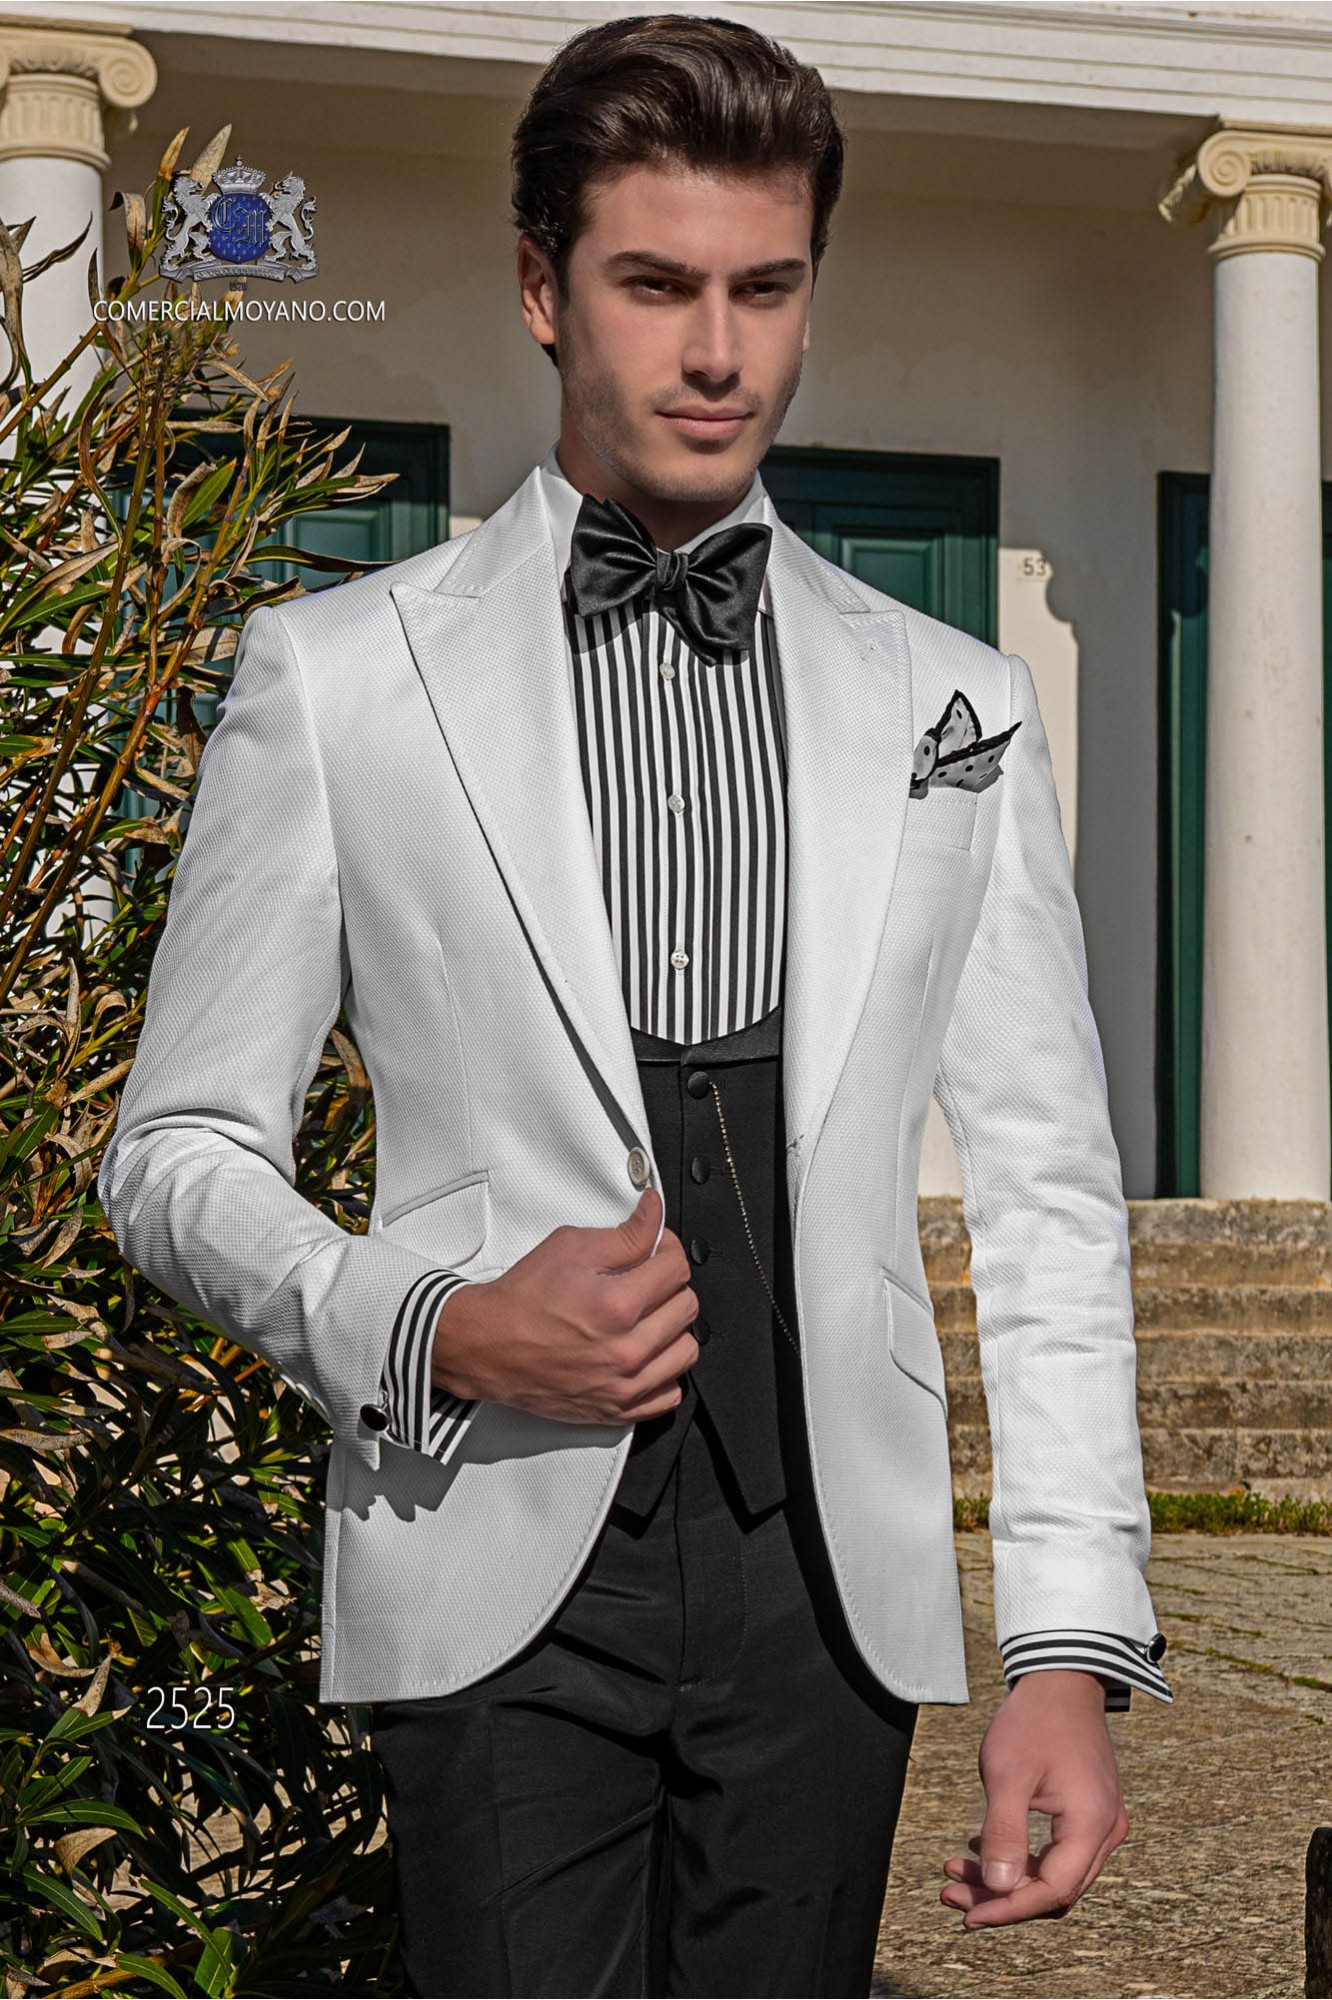 Traje de novio italiano a medida blanco de algodón tejido microdiseño modelo: 2525 Mario Moyano colección Hipster